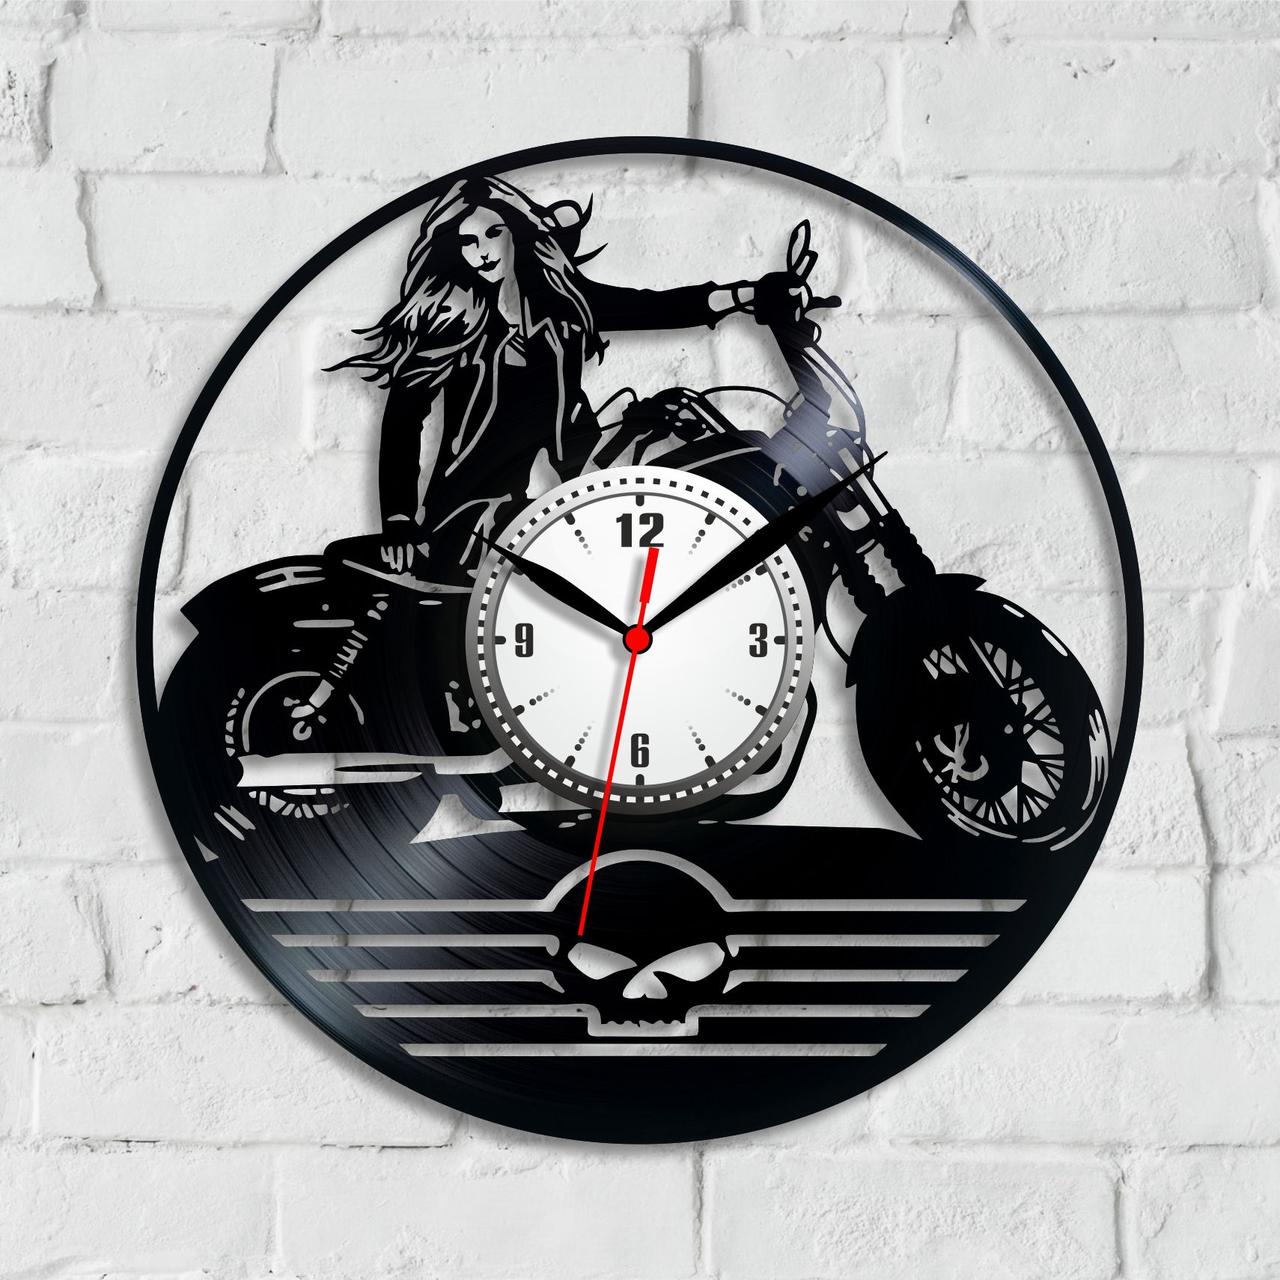 Байк-годинник Годинник для байкера Швидка їзда Ретрогодинник Череп на годиннику Годинник у хол Дівчина на мотоциклі 300 мм Спорт